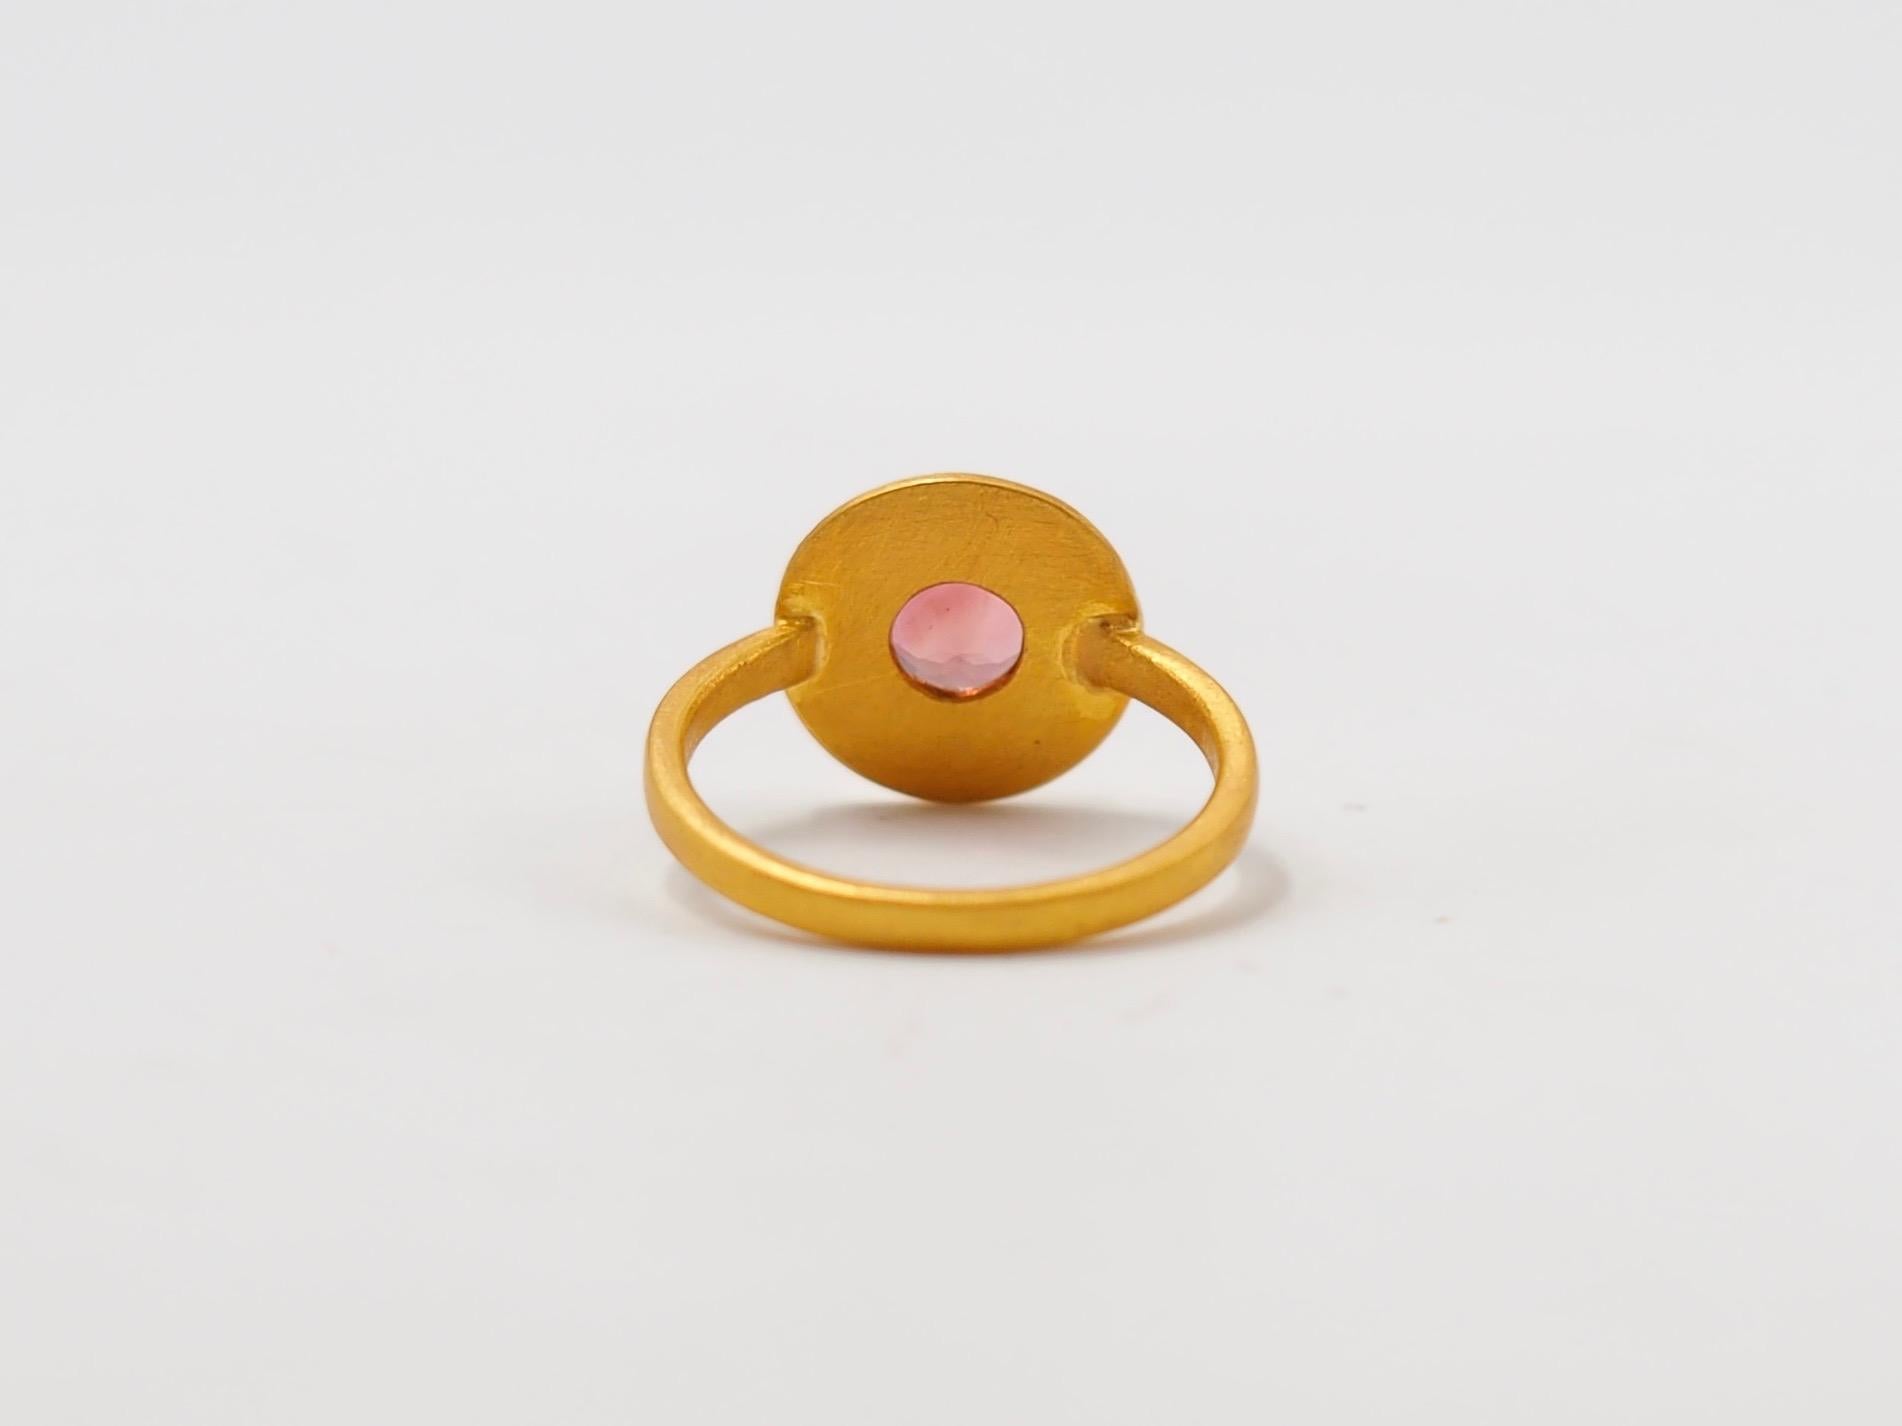 Scrives Pink Tourmaline Sun Disk 22 Karat Gold Cocktail Handmade Cluster Ring For Sale 1